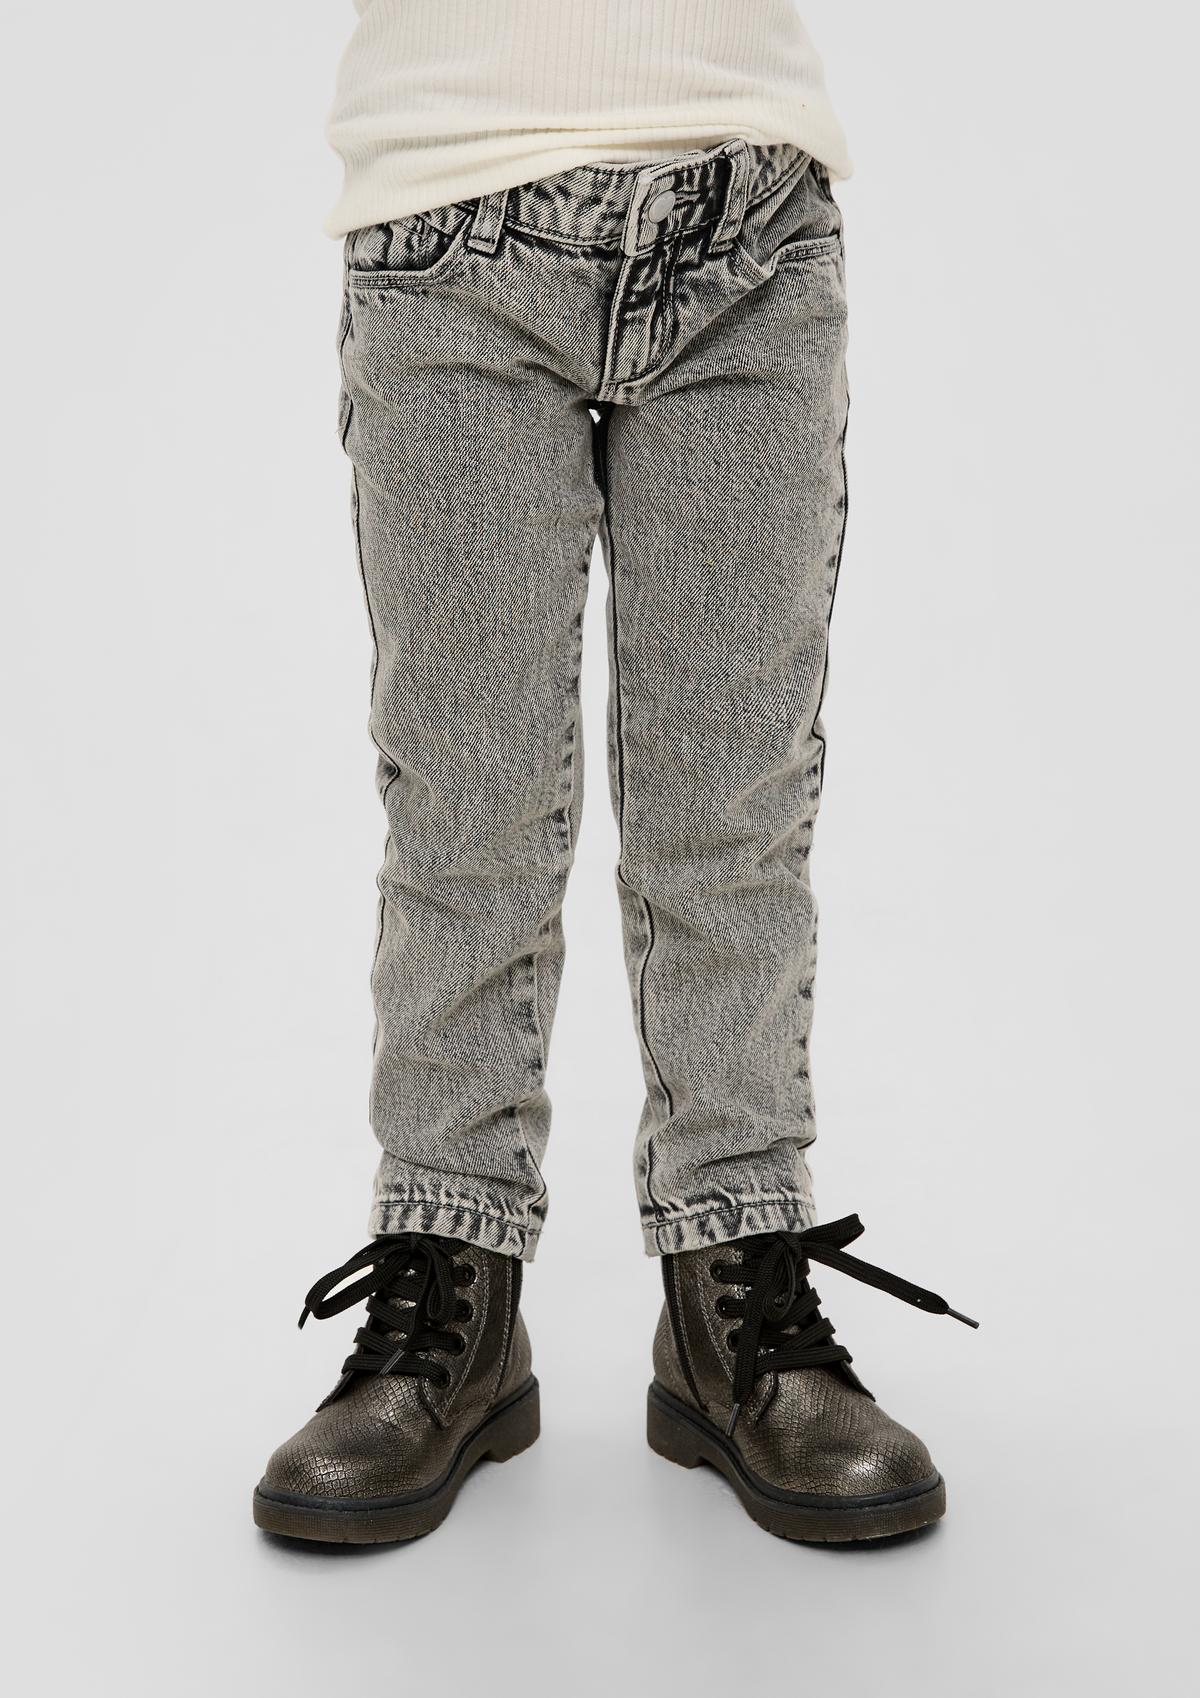 Regular: jeans hlače s potiskom po celotni površini